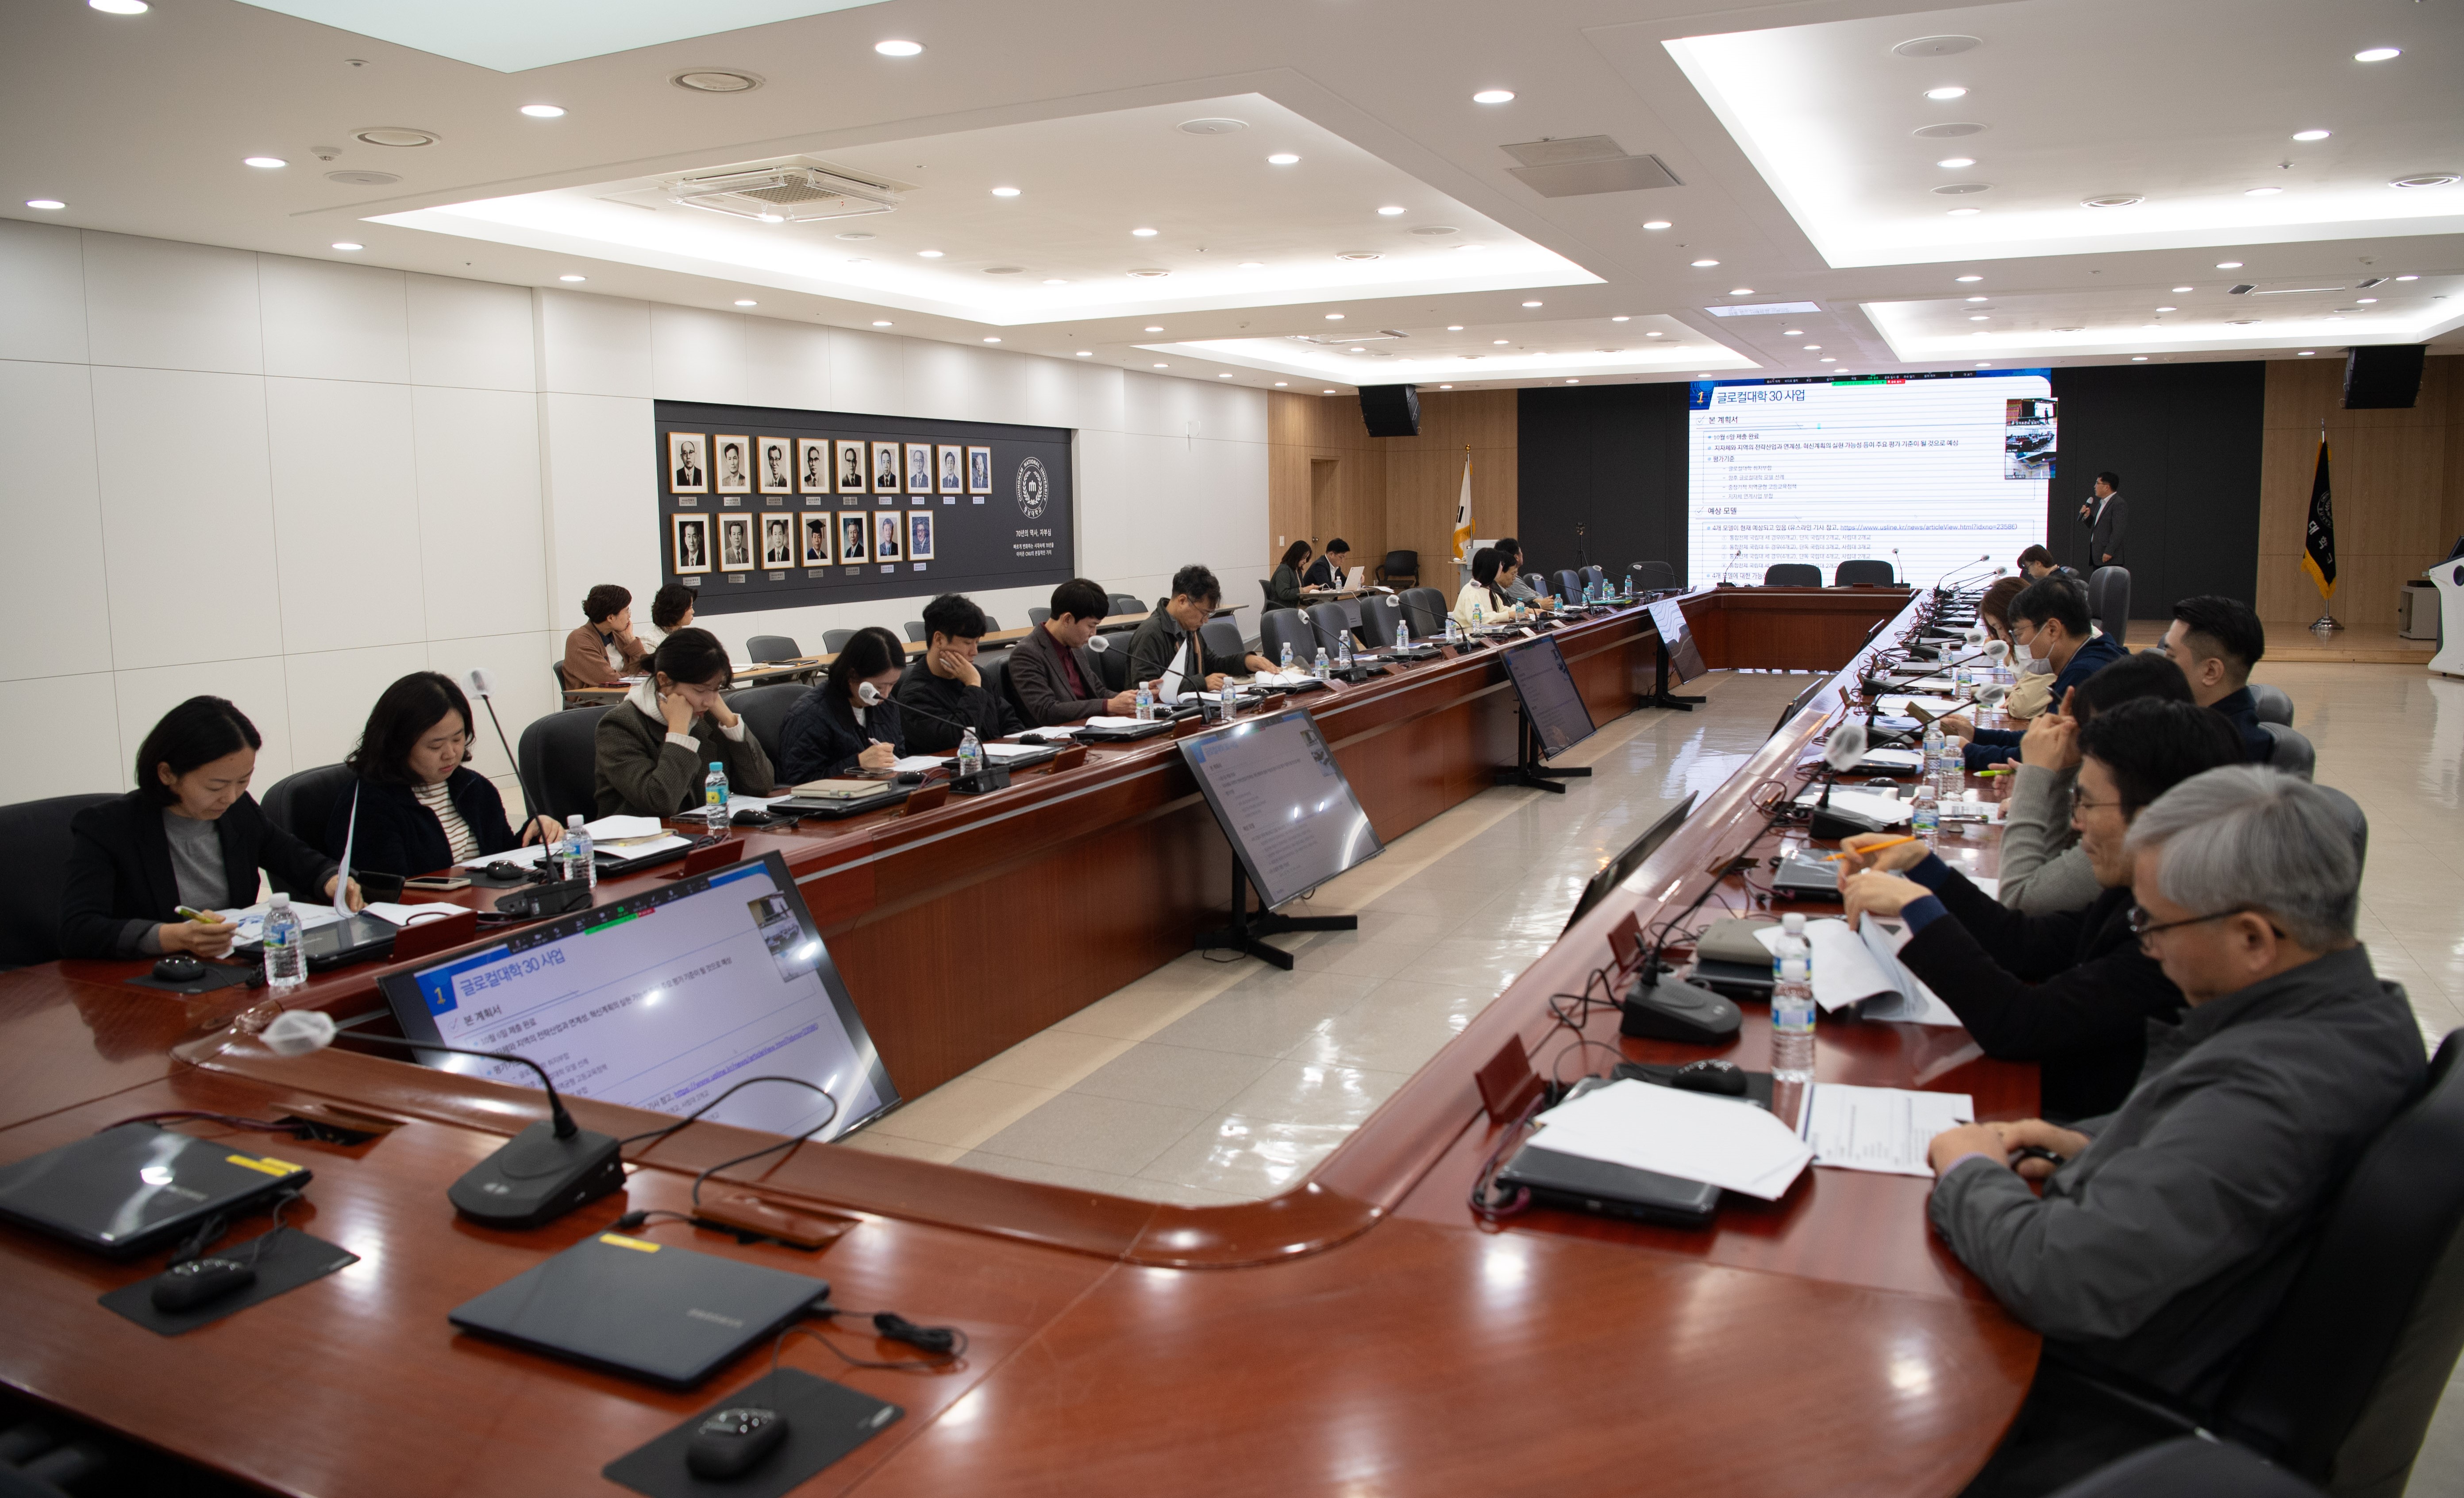 글로컬대학 30 의견 수렴을 위한 정책토론회 개최 사진